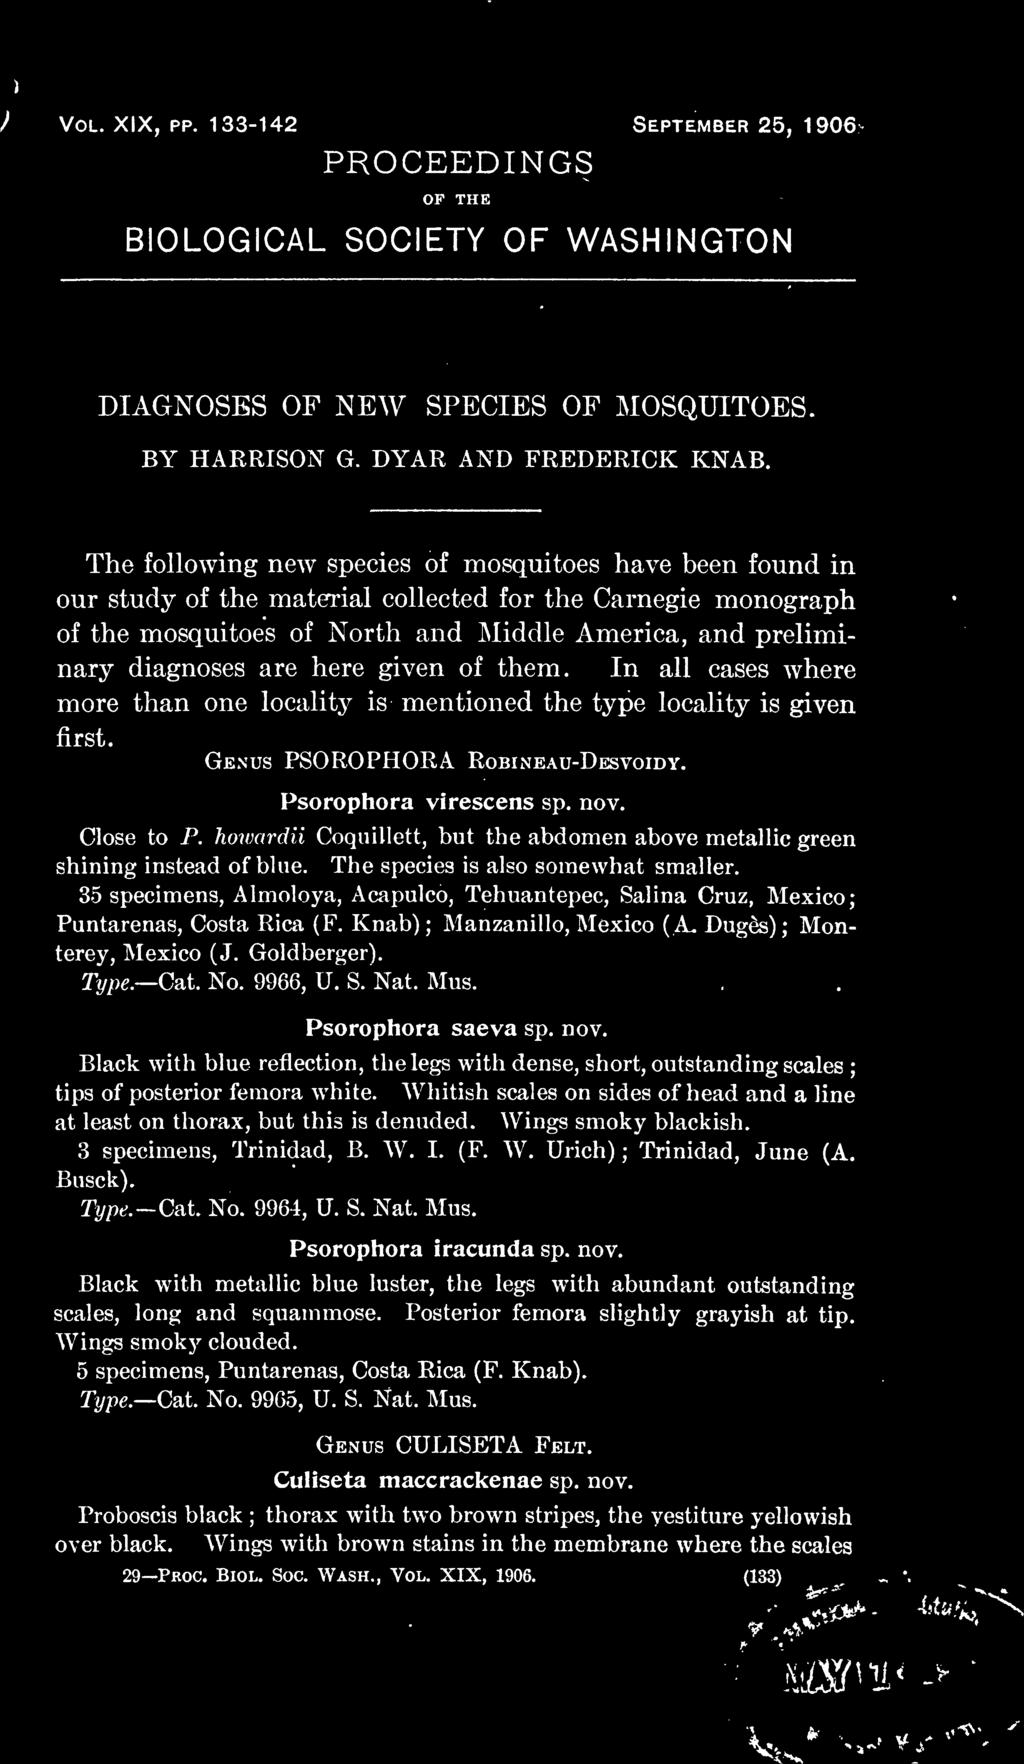 35 specimens, Almoloya, Acapulco, Tehuantepec, Salina Cruz, Mexico Puntarenas, Costa Rica (F. Knab) Manzanillo, Mexico (A. Duges) Mon terey, Mexico ( J. Goldberger). Type. Cat. No. 9966, U. S. Nat.